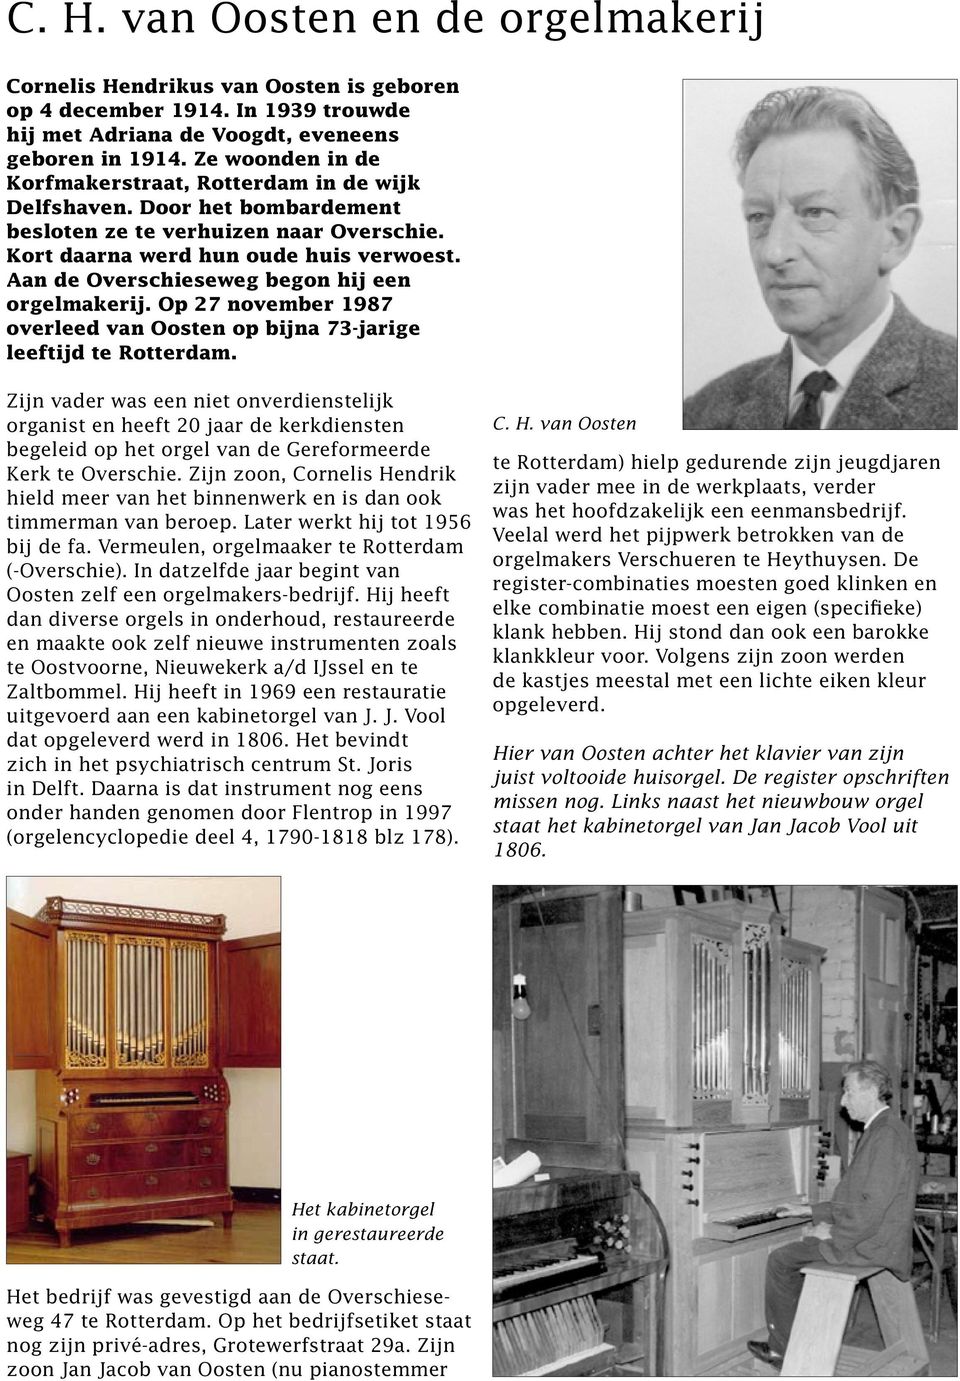 Aan de Overschieseweg begon hij een orgelmakerij. Op 27 november 1987 overleed van Oosten op bijna 73-jarige leeftijd te Rotterdam.